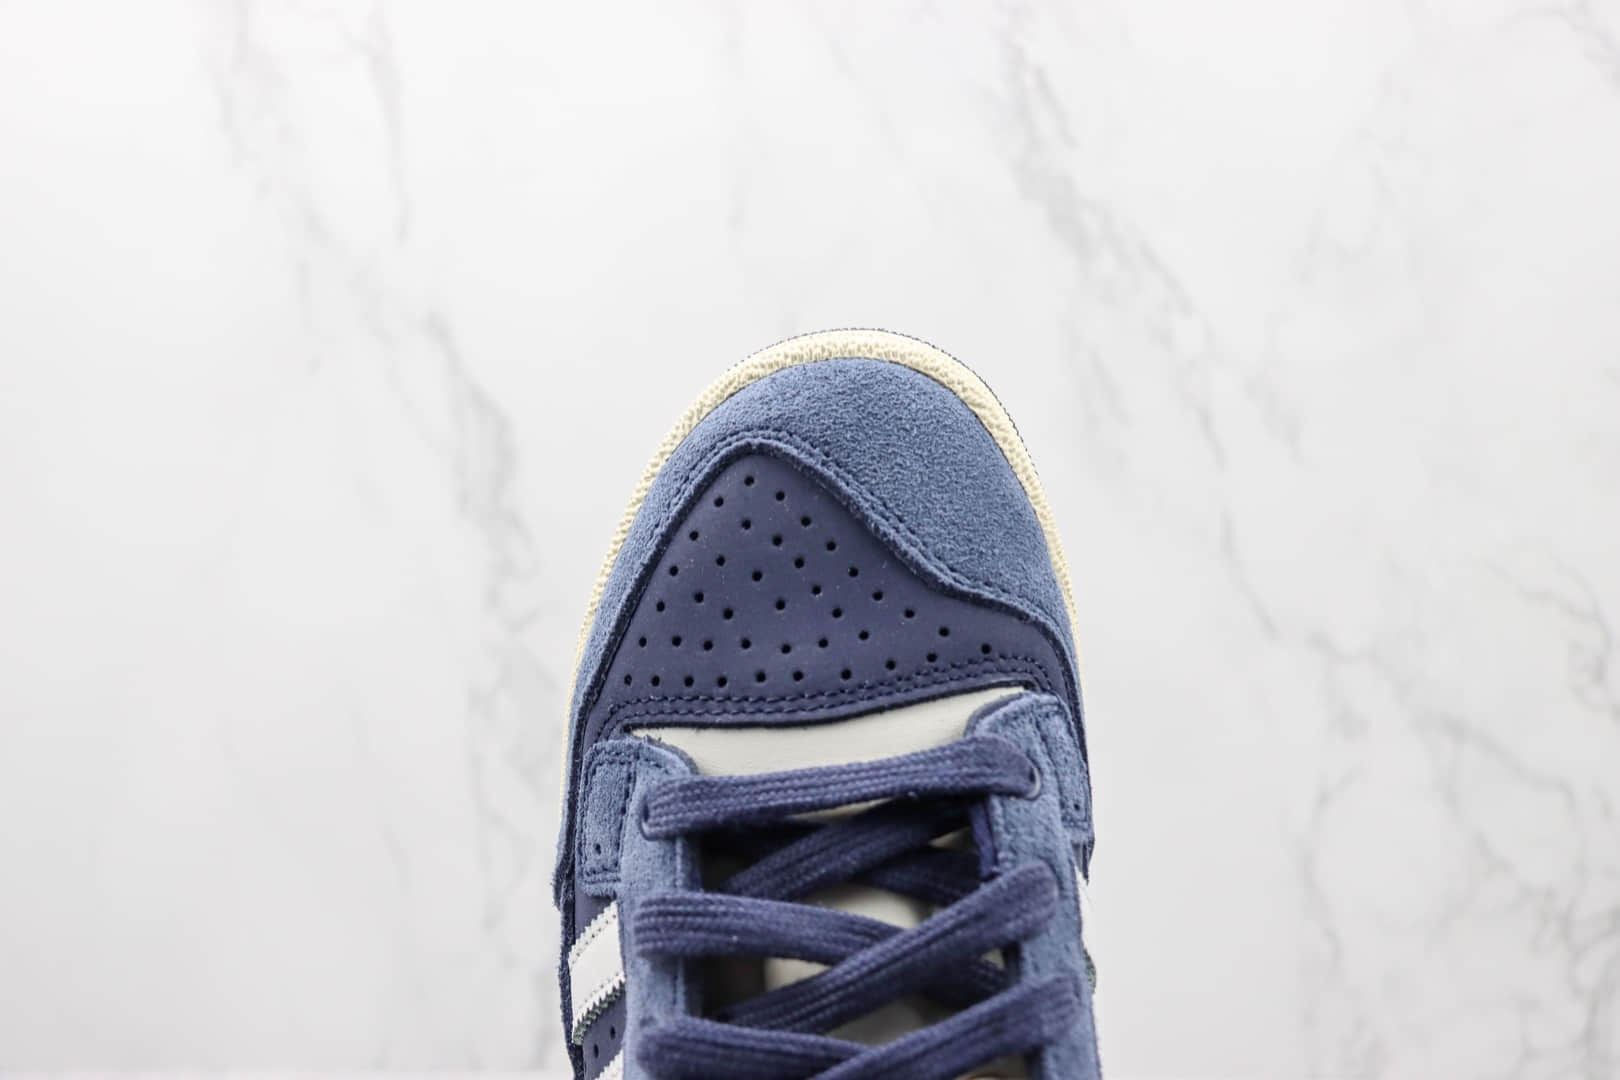 阿迪达斯Adidas Originals Centennial 85 High纯原版本高帮复古蓝白色麂皮板鞋 莆田天花板阿迪达斯板鞋 货号：FZ5992